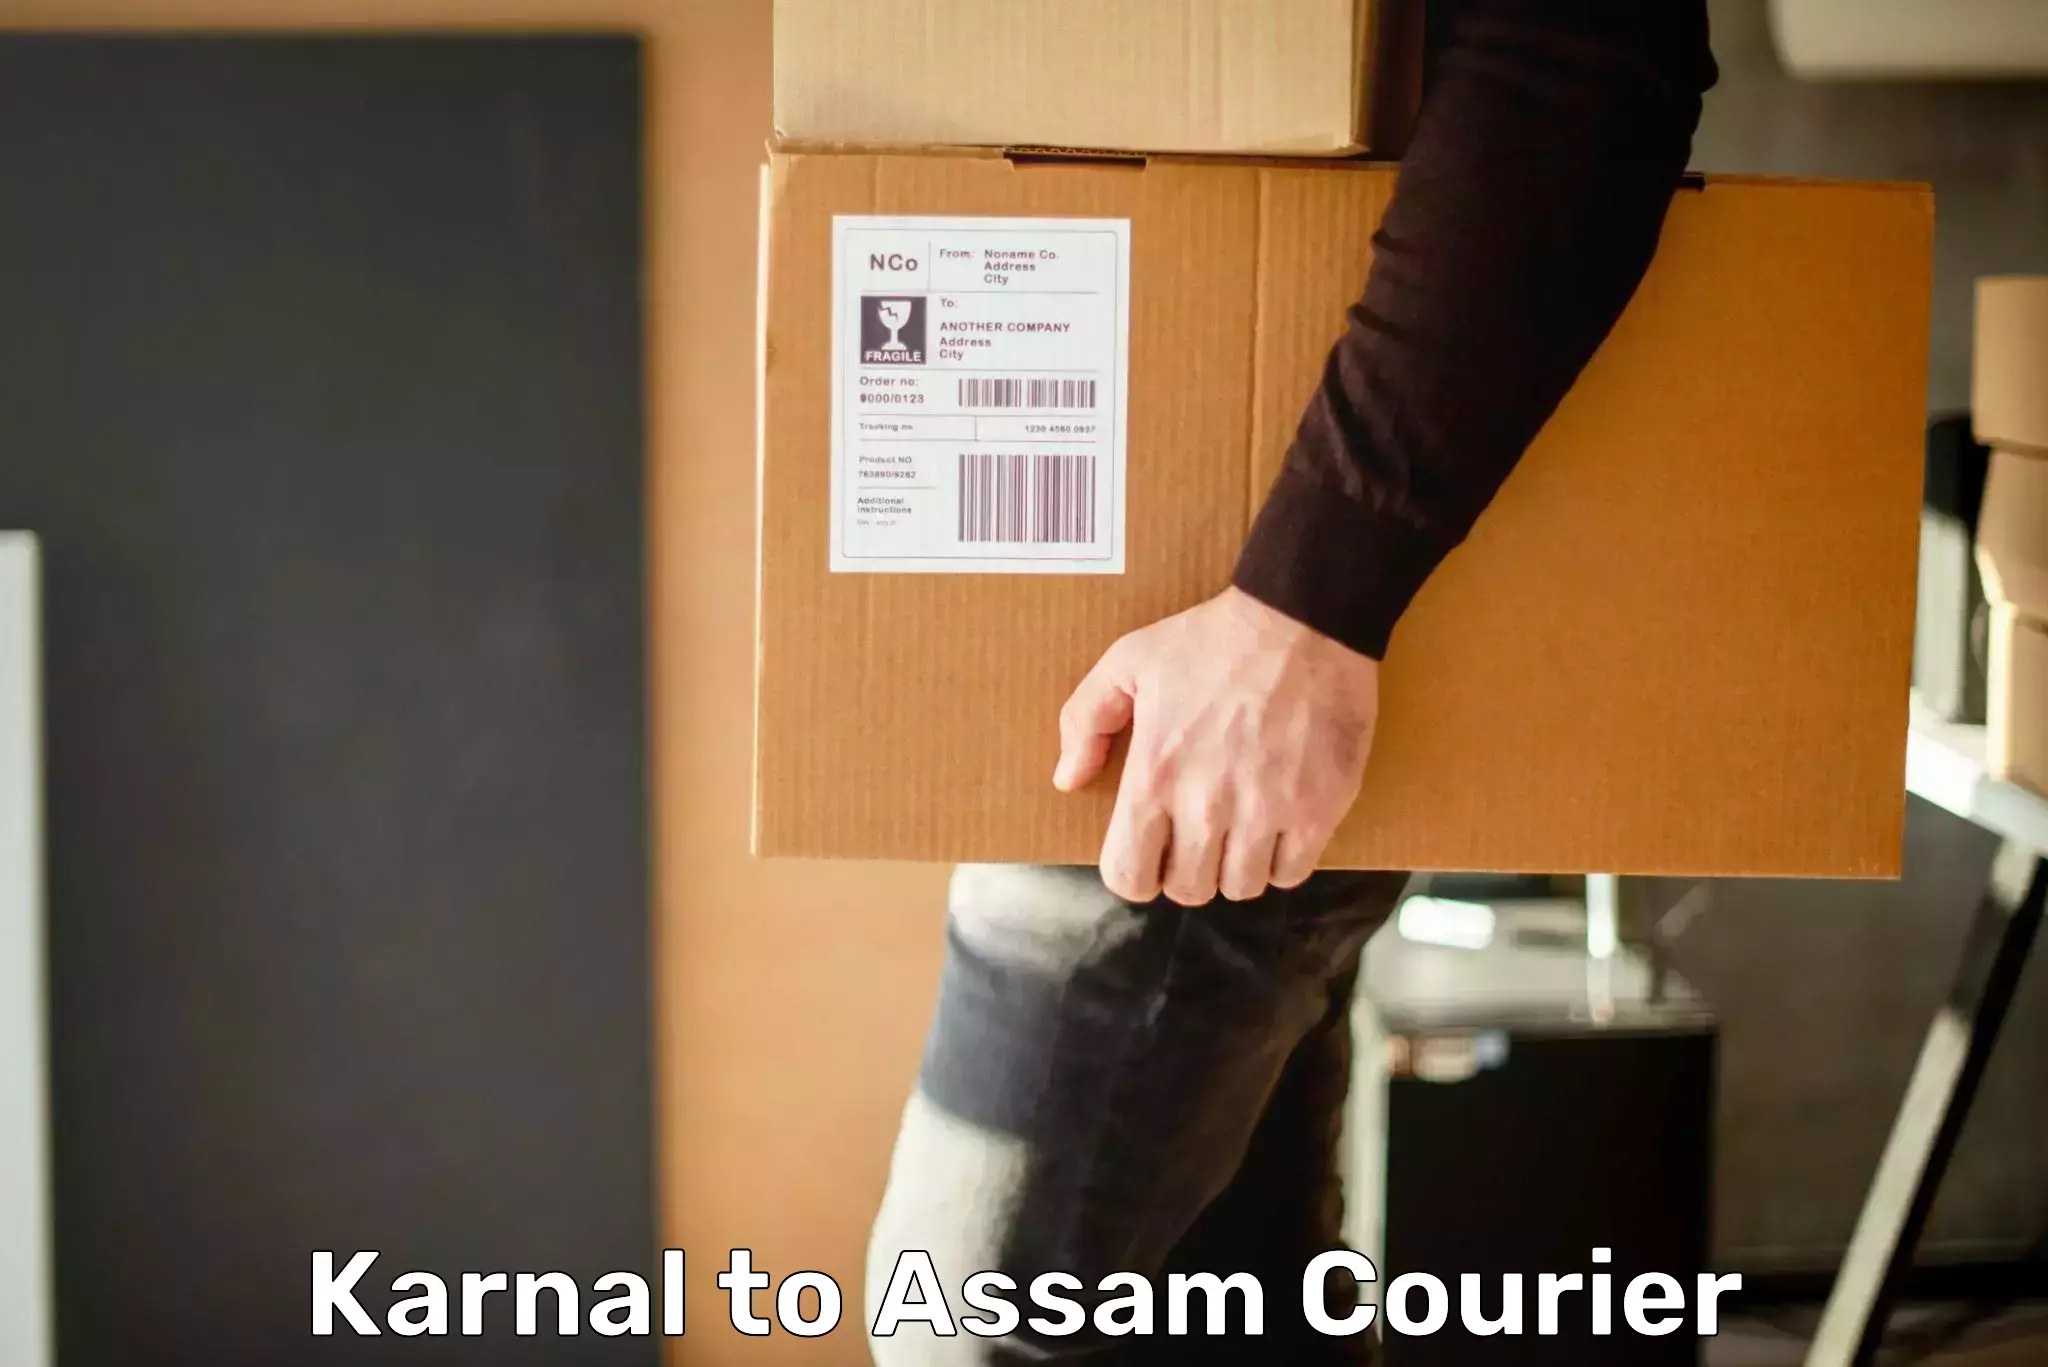 Express logistics service Karnal to Bamunimaidan